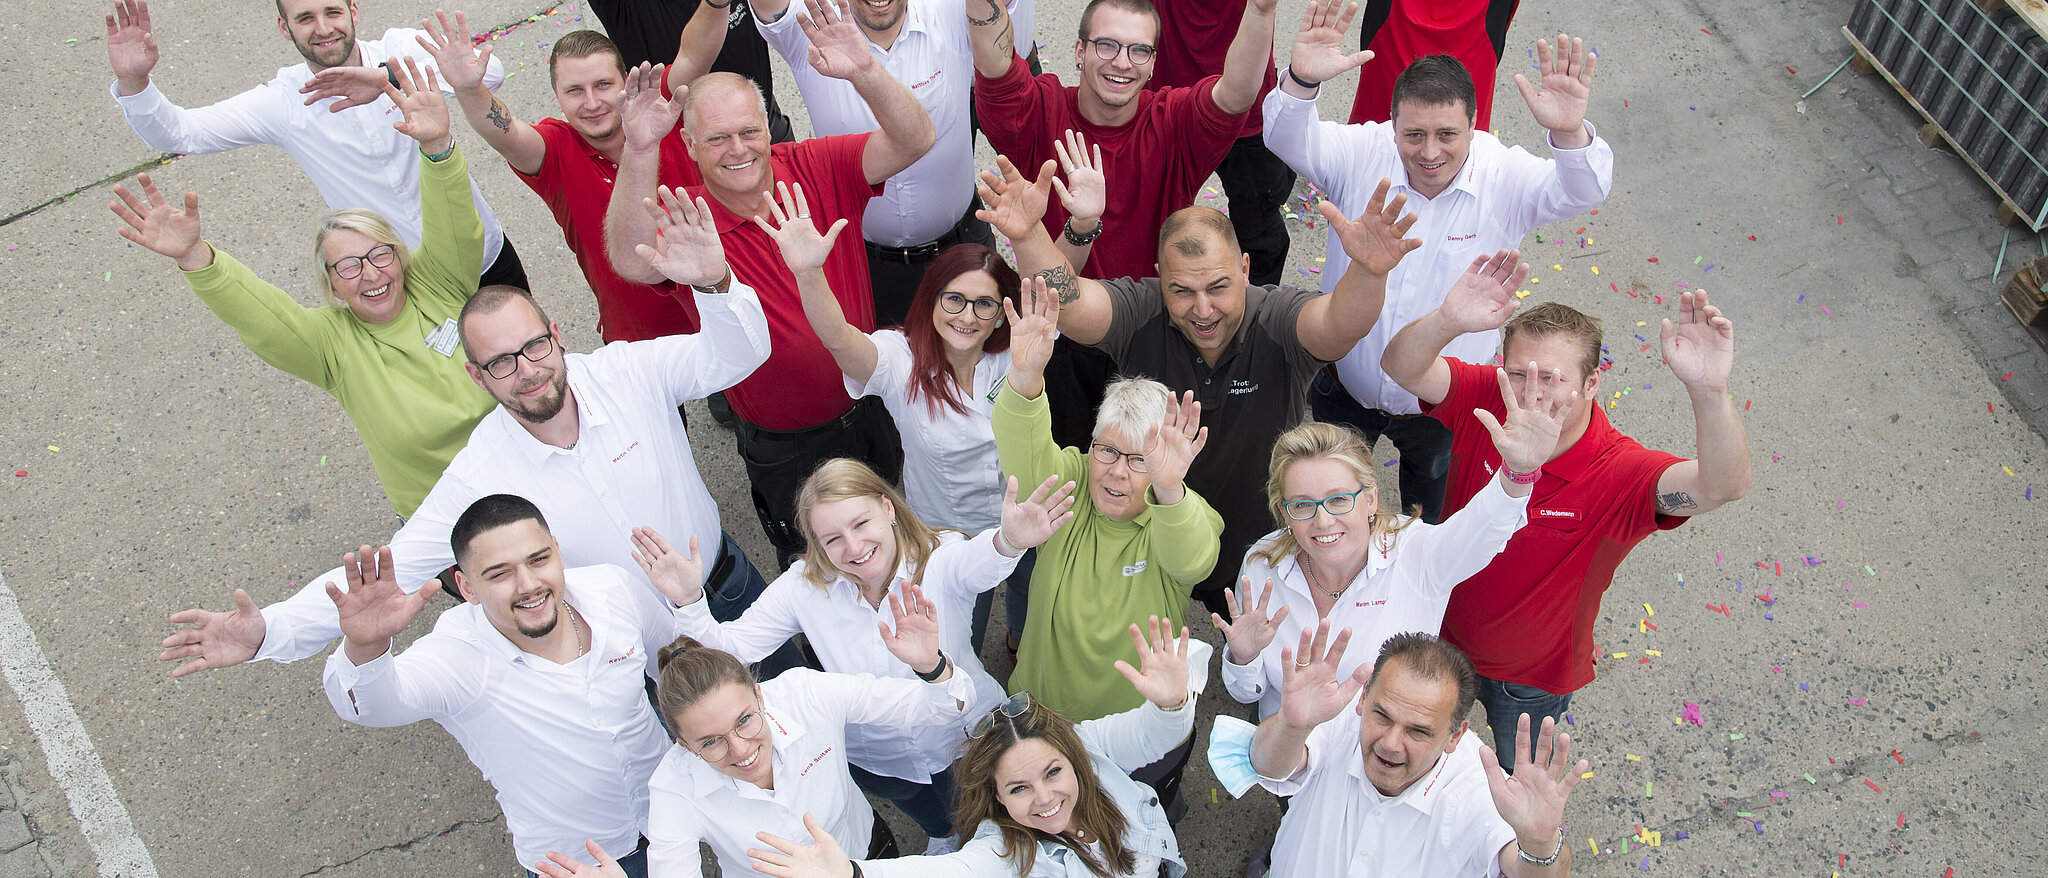 Mölders Team steht als Gruppe eng zusammen und halten ihre Hände in die Luft